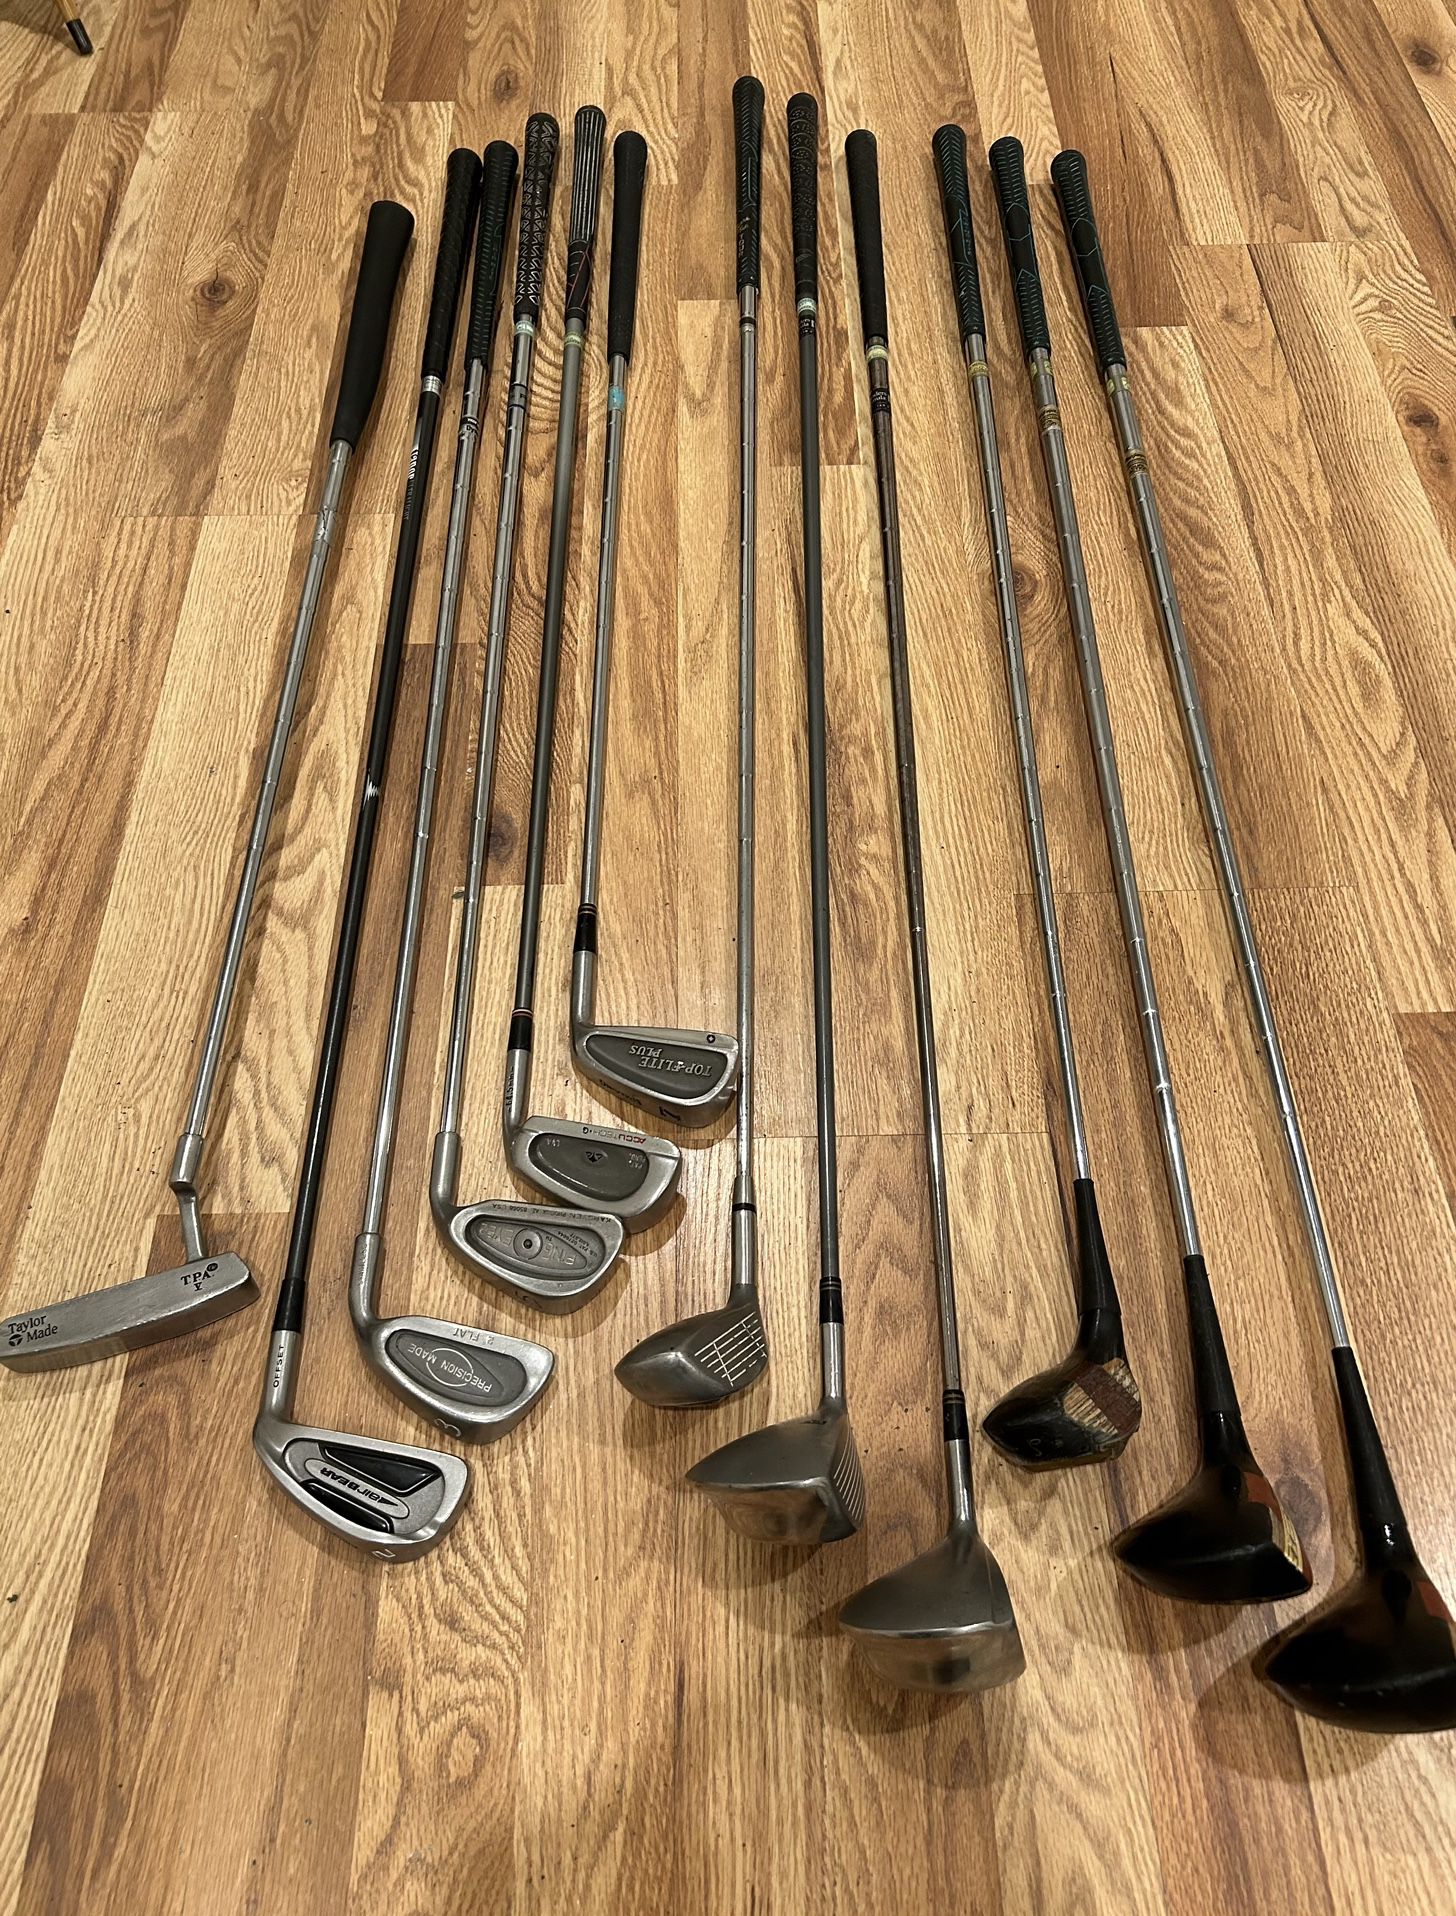 Golf Club Vintage Iron Set - MacGregor, Ping Eye, Nicklaus, TaylorMade, Pal Joey